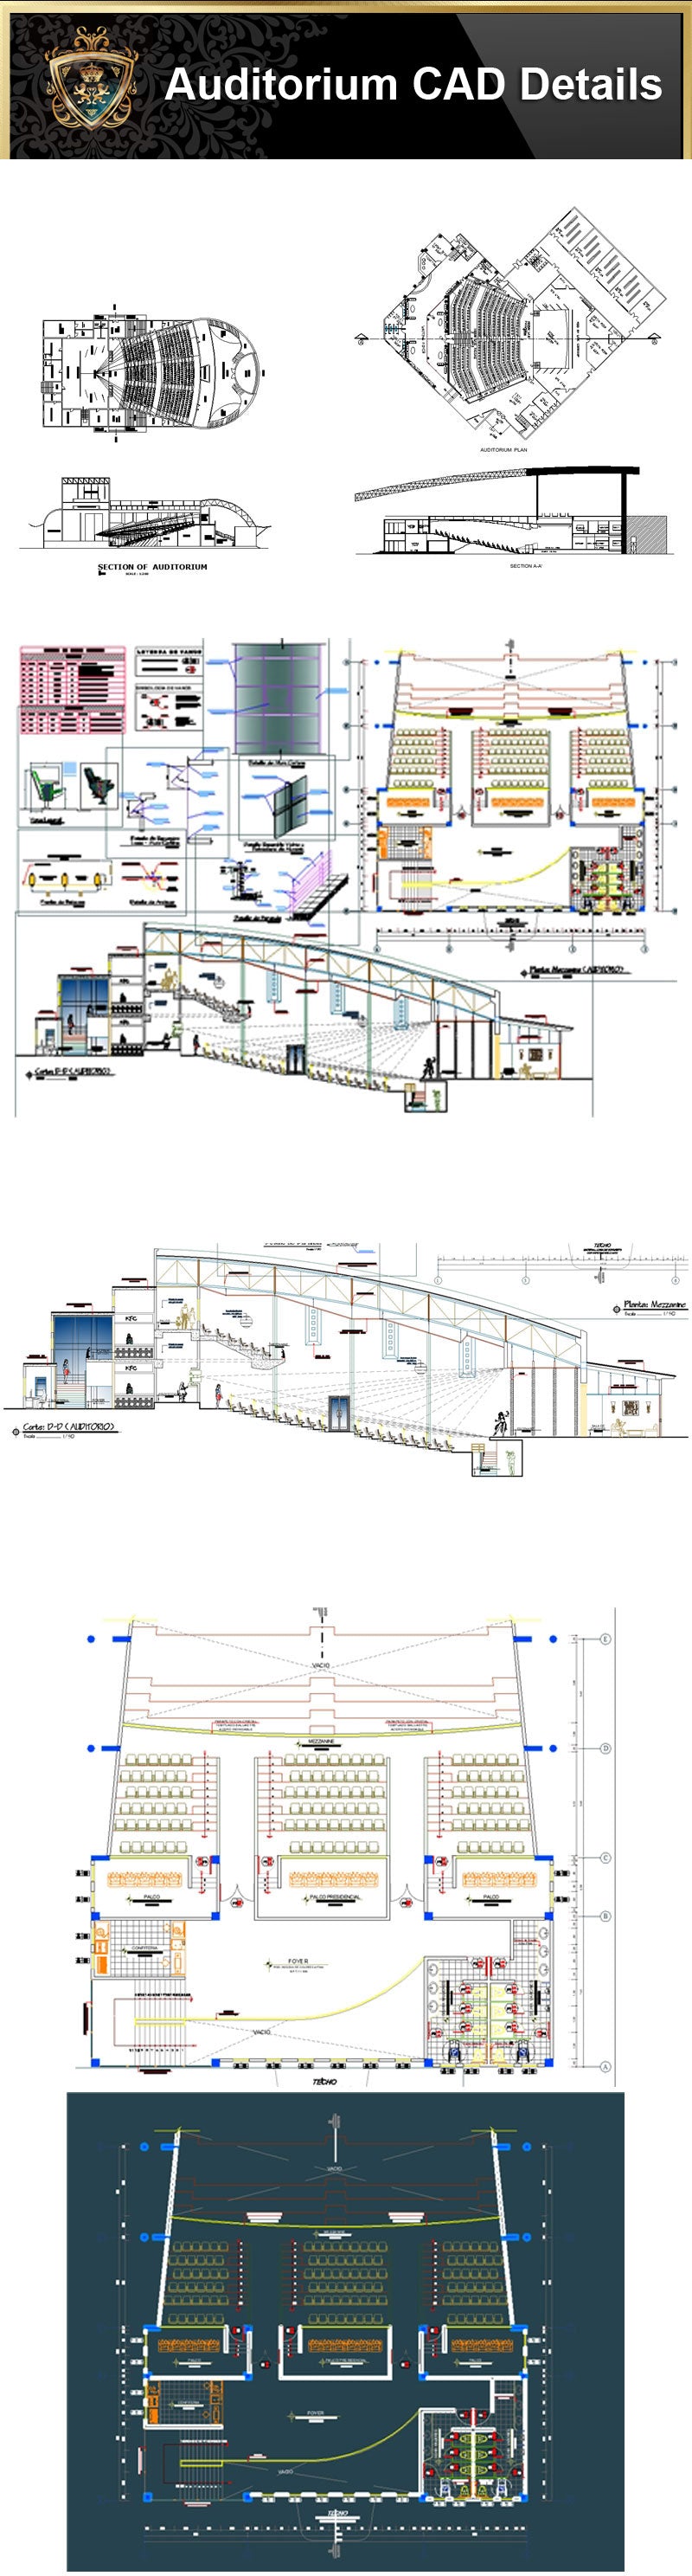 @Auditorium Design,Autocad Blocks,AuditoriumDetails,Auditorium Section,Auditorium elevation design drawings